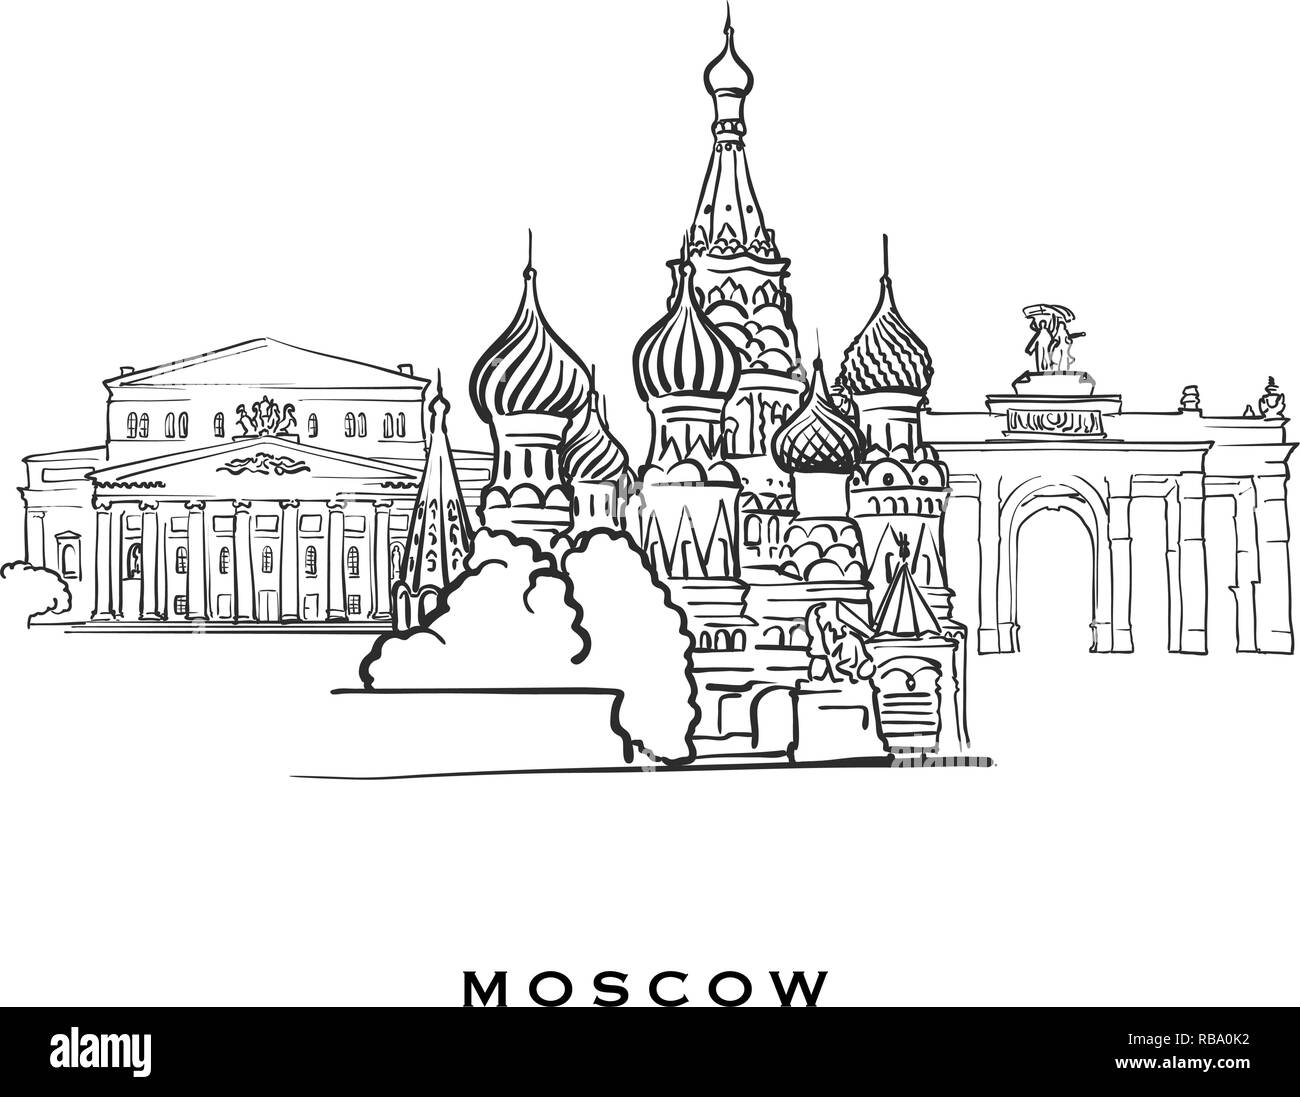 Moscou La Russie célèbre l'architecture. Croquis vecteur décrit séparés sur fond blanc. Dessins d'architecture de toutes les capitales européennes. Illustration de Vecteur